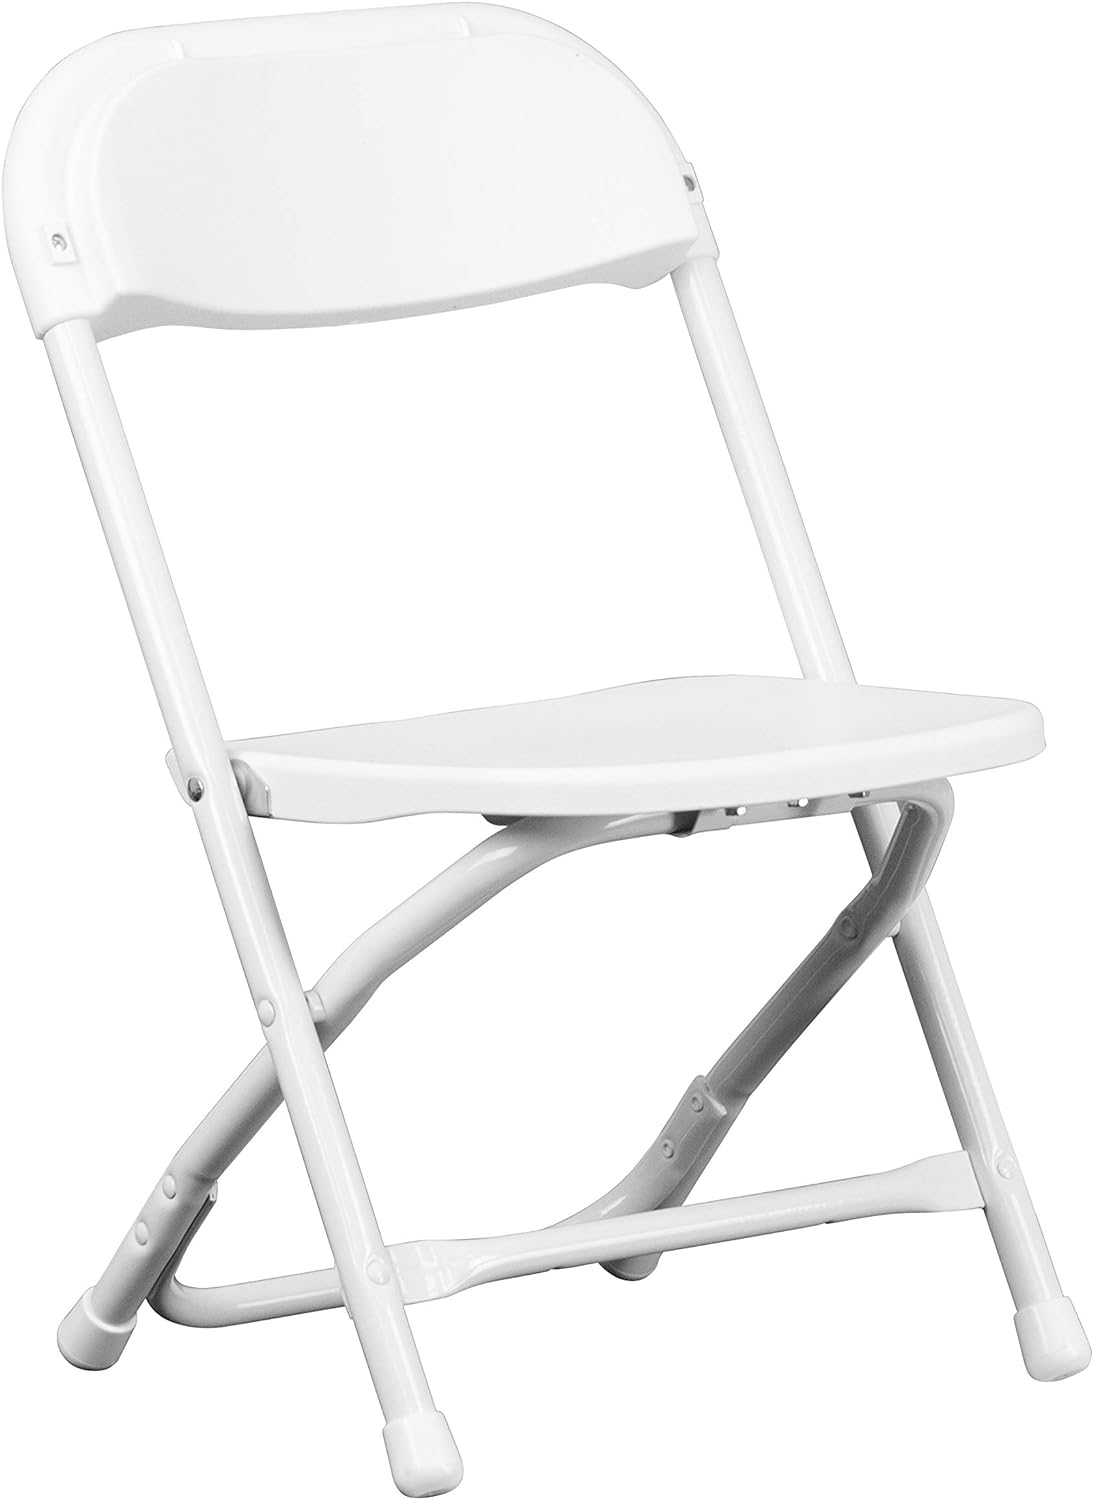 Muebles para niños silla plegable de plástico., Acero, Blanco